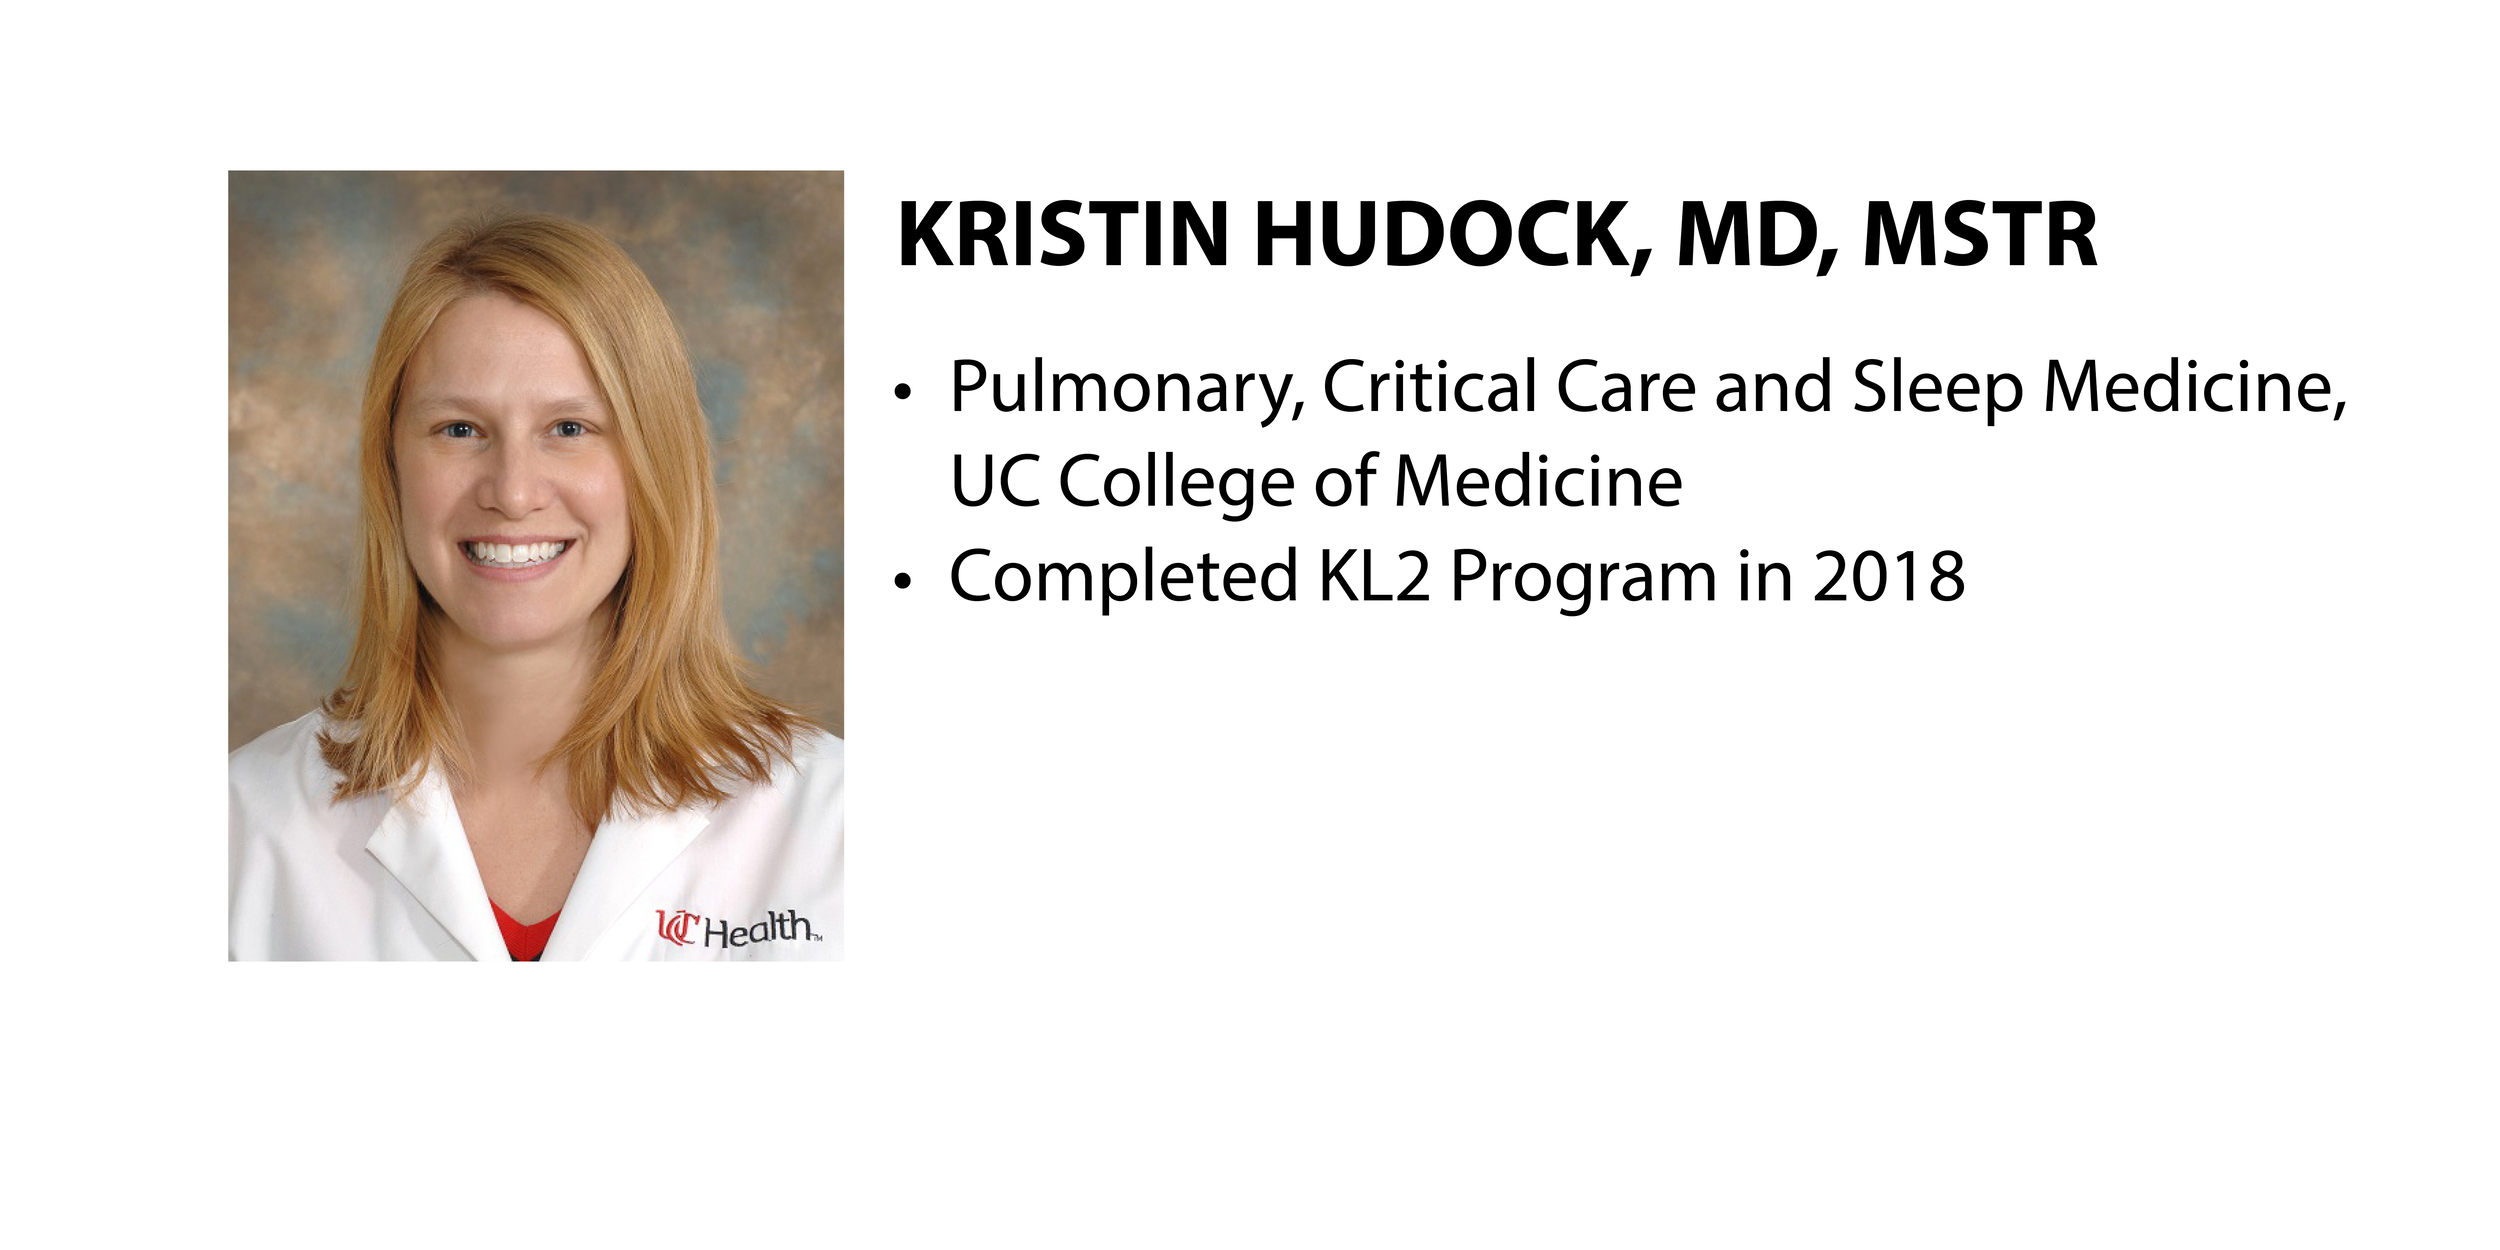 K Scholar Overview: Kristin Hudock